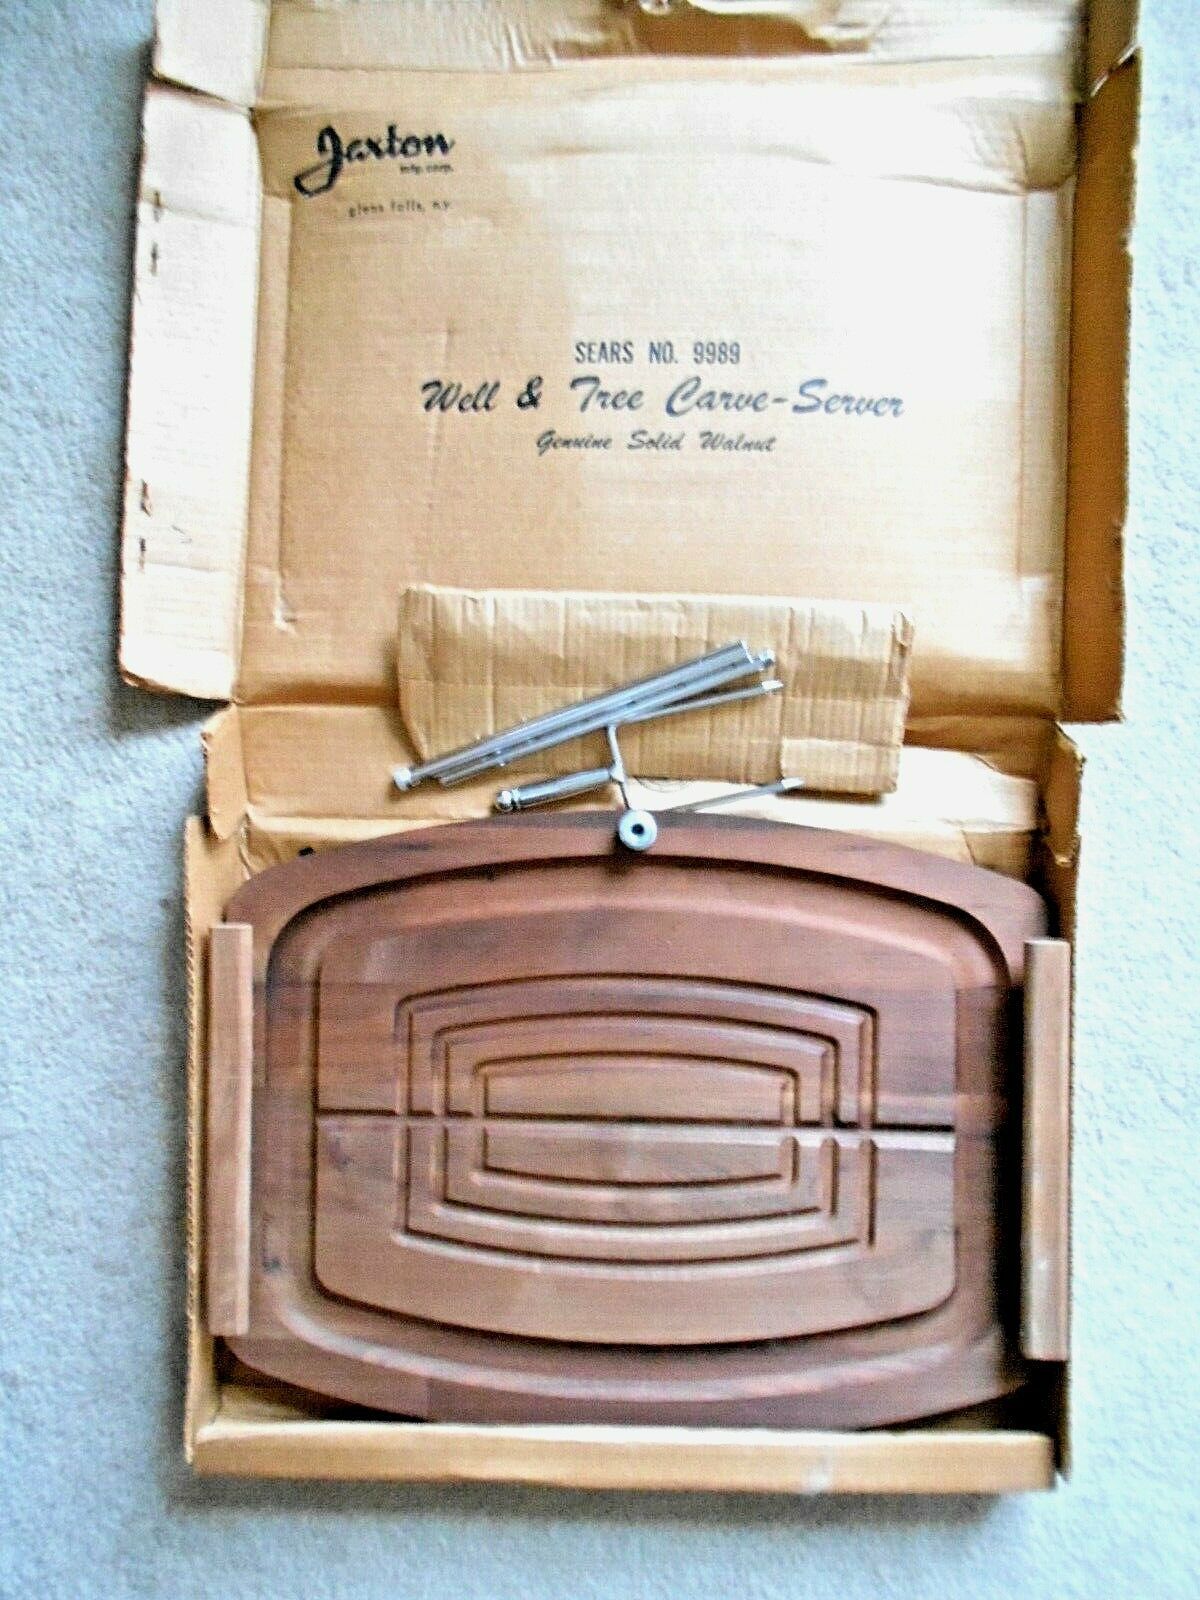 Jaxton Well & Tree Carve-Server Genuine Solid Walnut Sears #9989 - $20.78